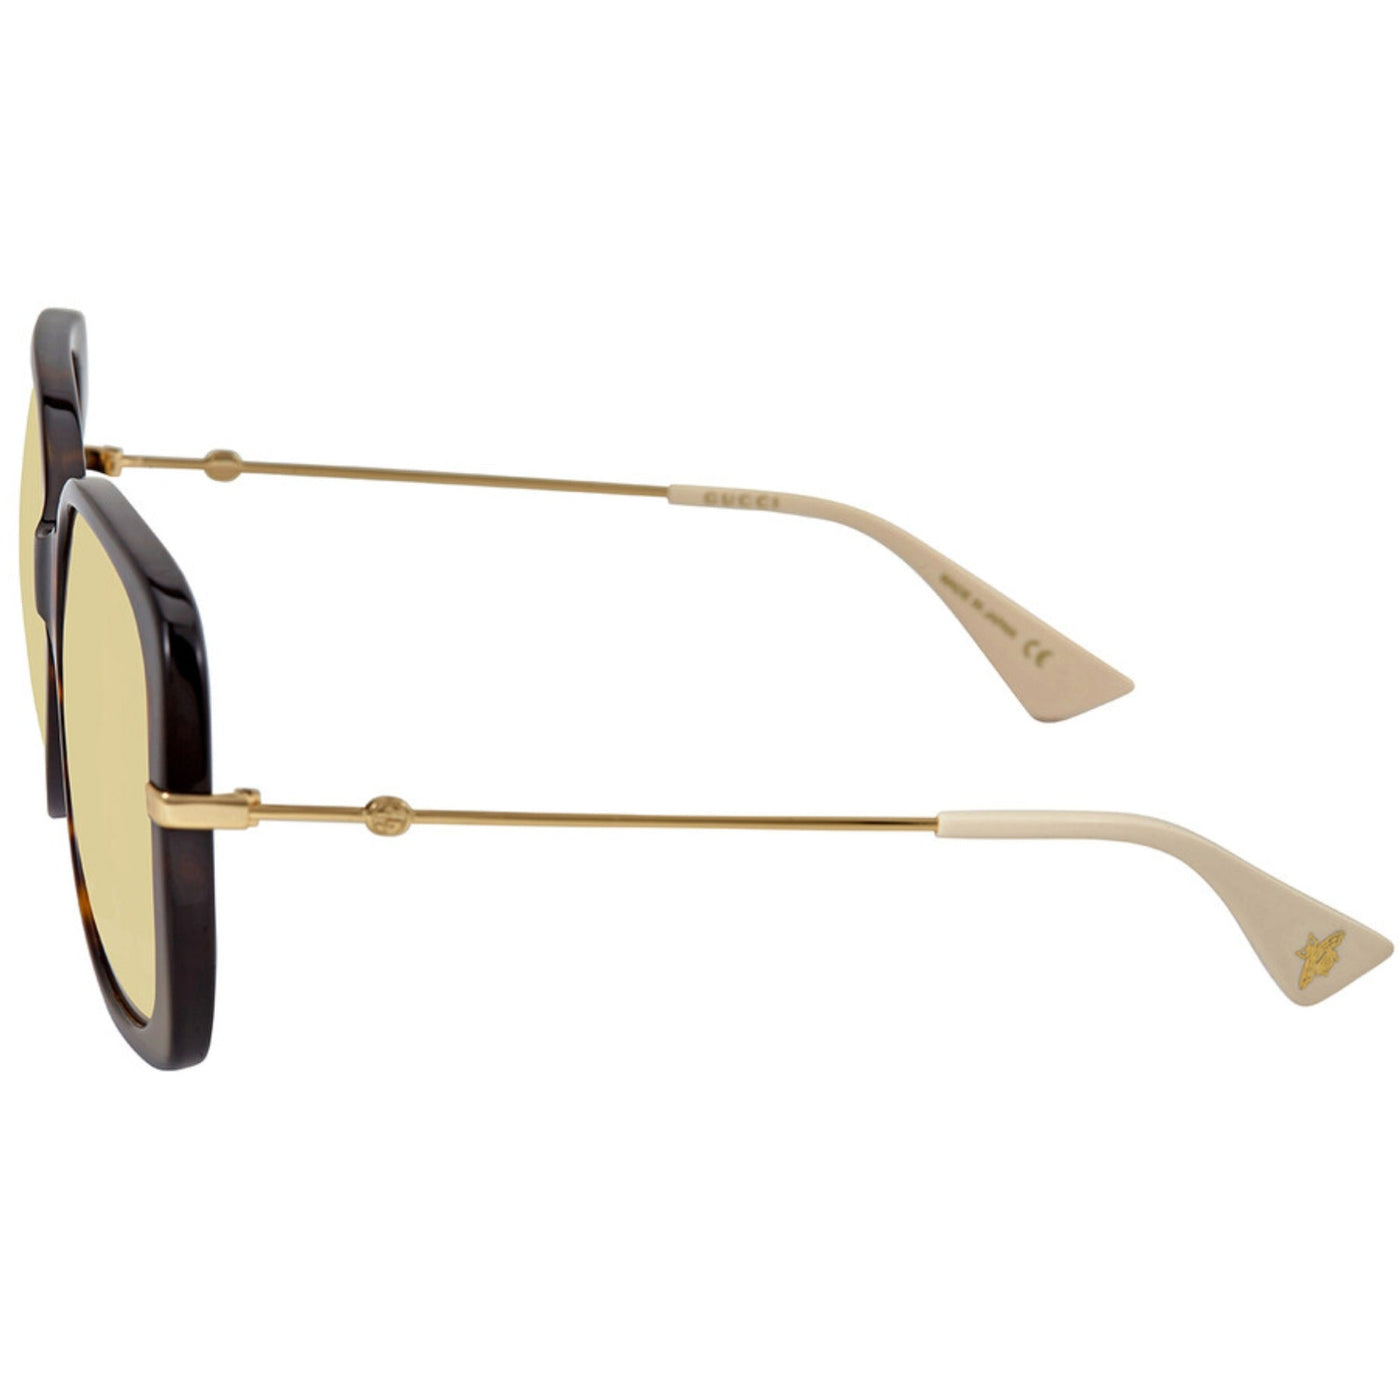 Gucci Yellow Rectangular Ladies Sunglasses Brand New - Luxury Cheaper